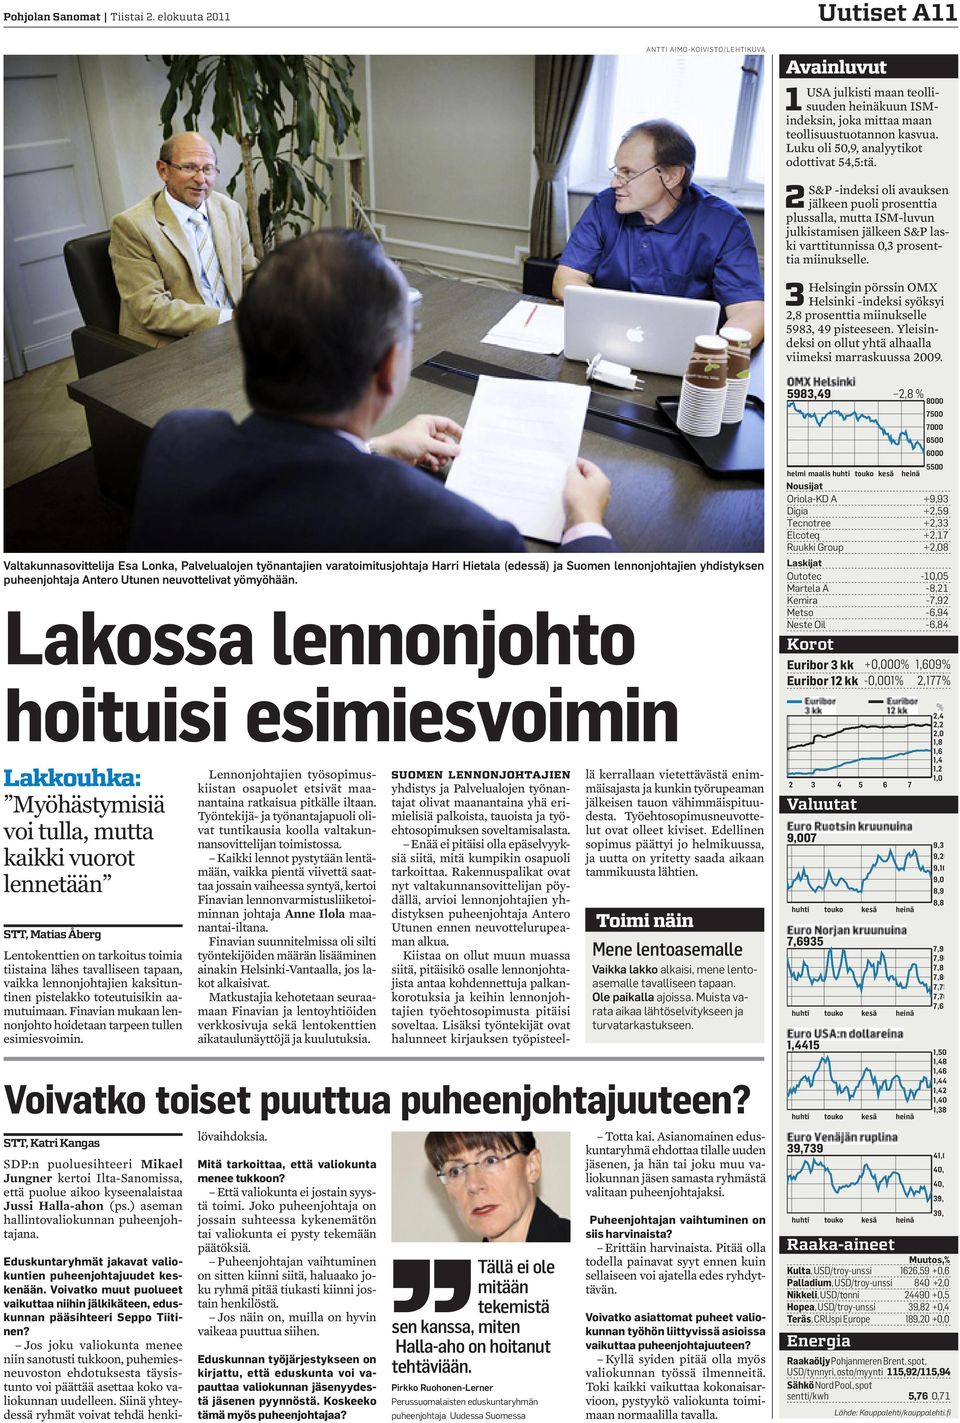 3Helsingin pörssin OMX Helsinki -indeksi syöksyi 2,8 prosenttia miinukselle 5983, 49 pisteeseen. Yleisindeksi on ollut yhtä alhaalla viimeksi marraskuussa 2009.